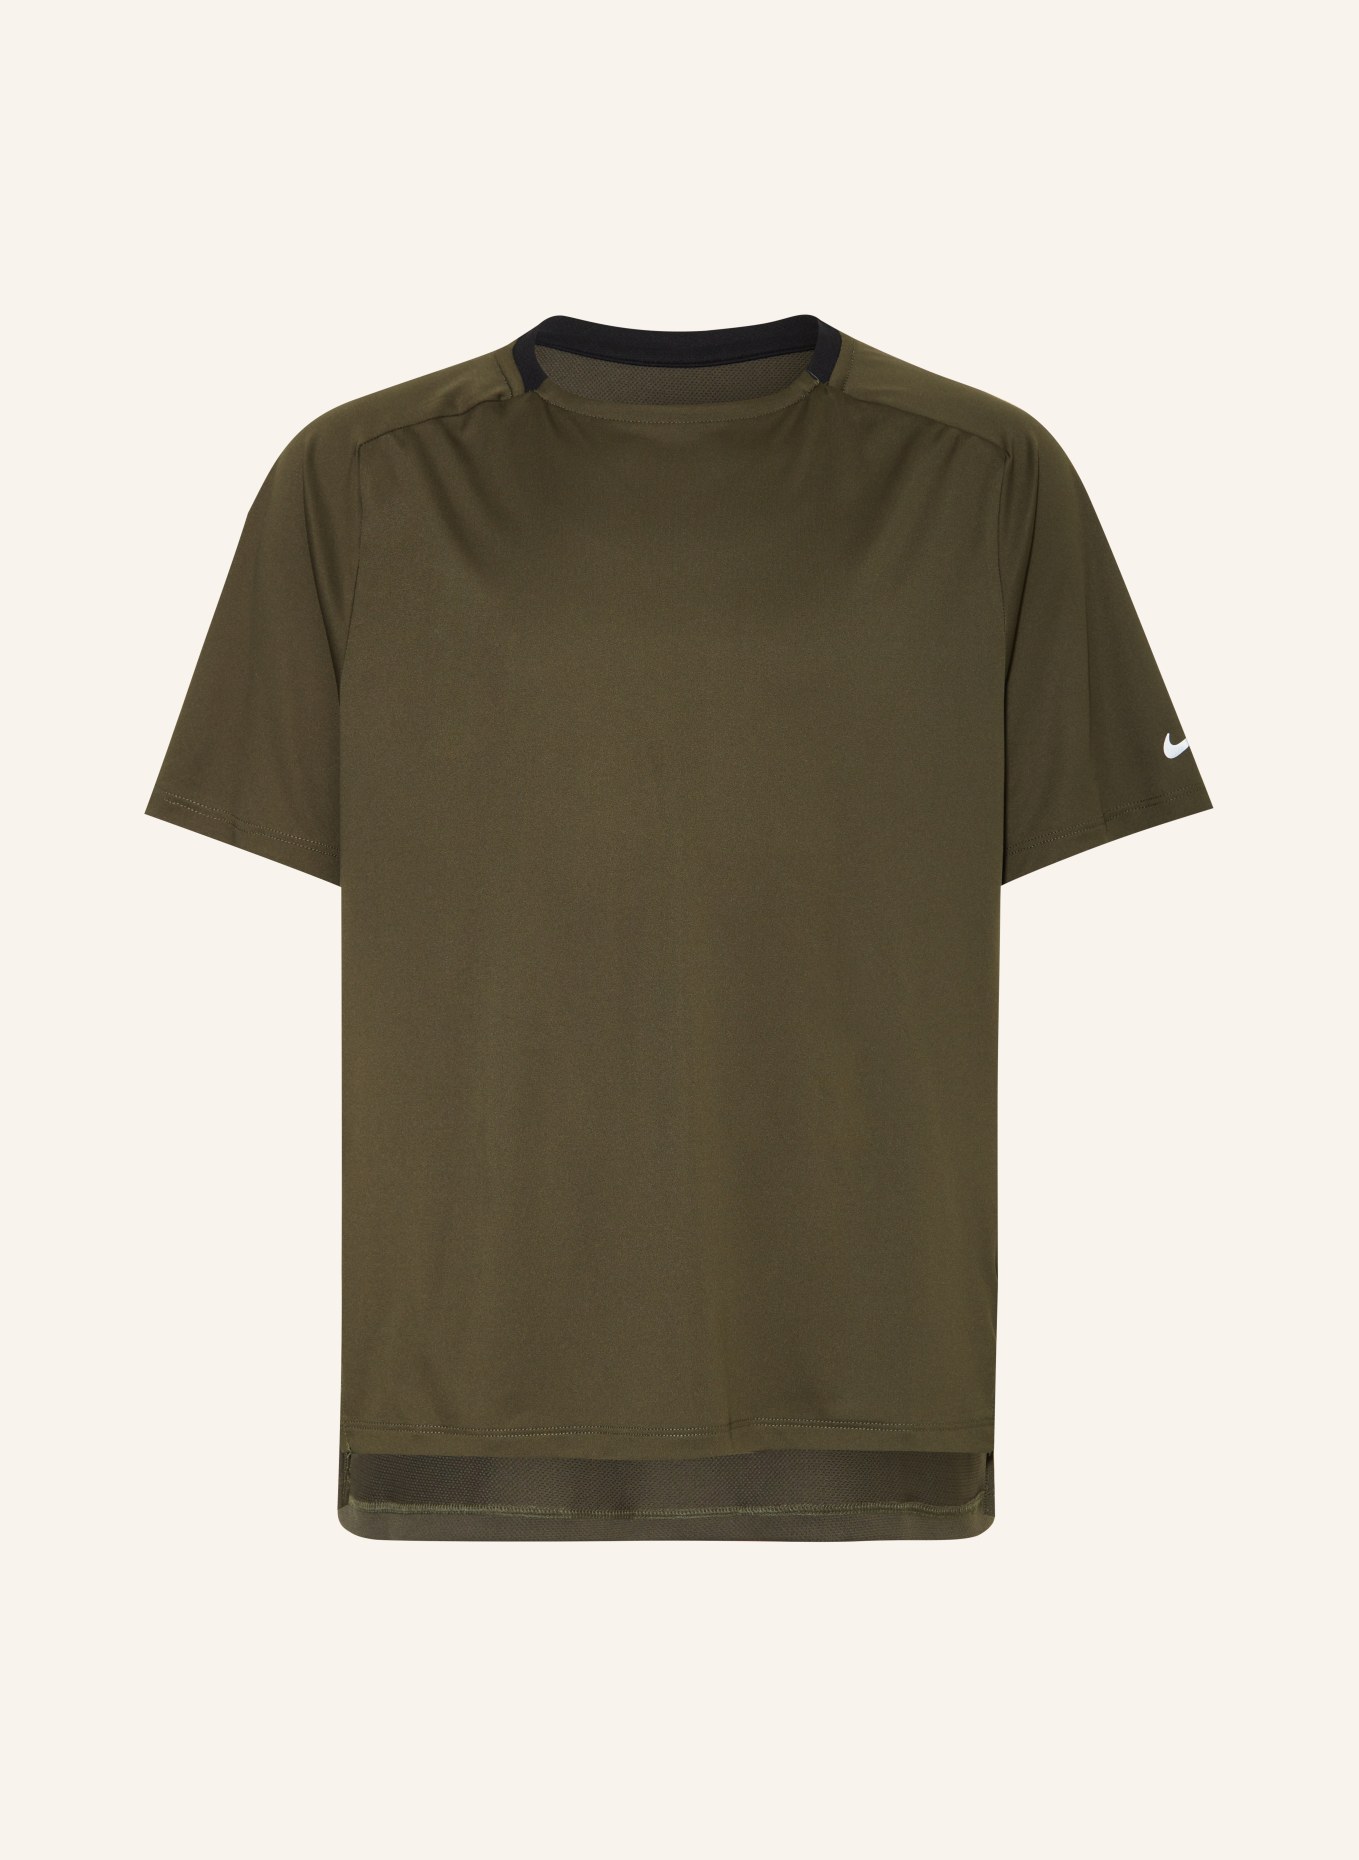 Nike T-Shirt DRI-FIT MULTI TECH, Farbe: KHAKI (Bild 1)